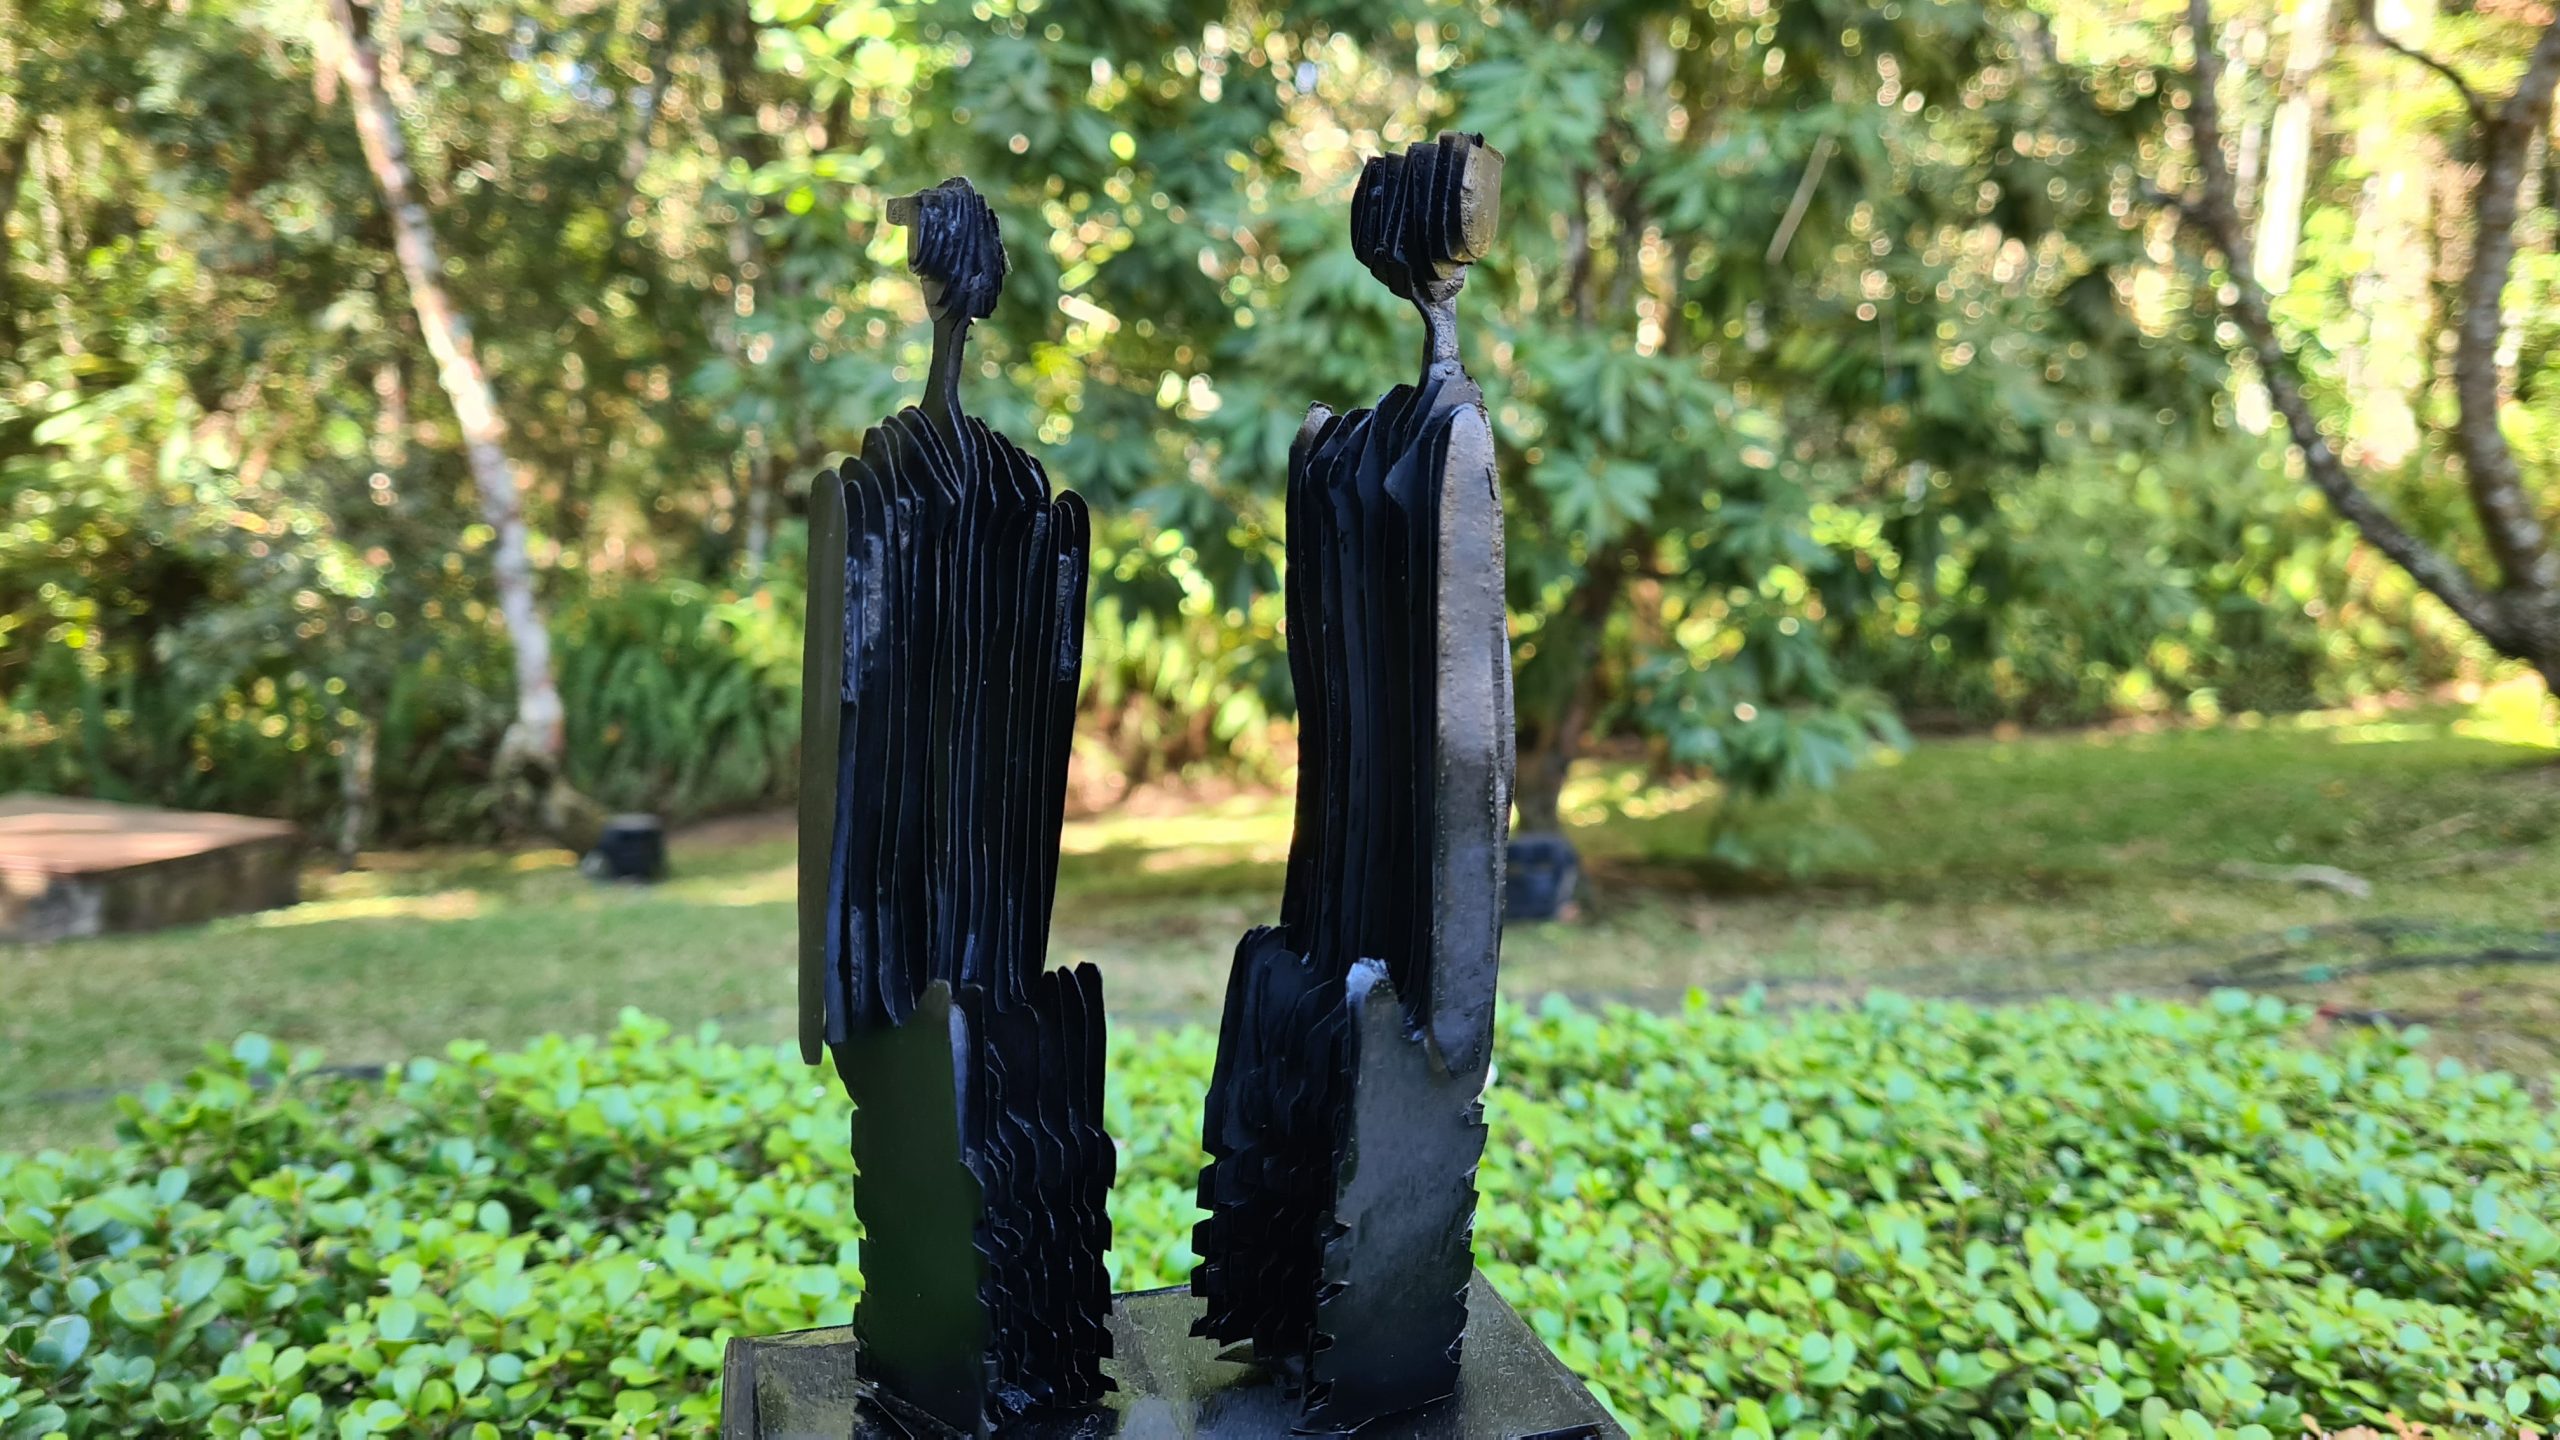 Uma escultura pequena feita a partir de recortes de papel na cor preta está em um espaço a céu aberto com mata nativa ao redor.